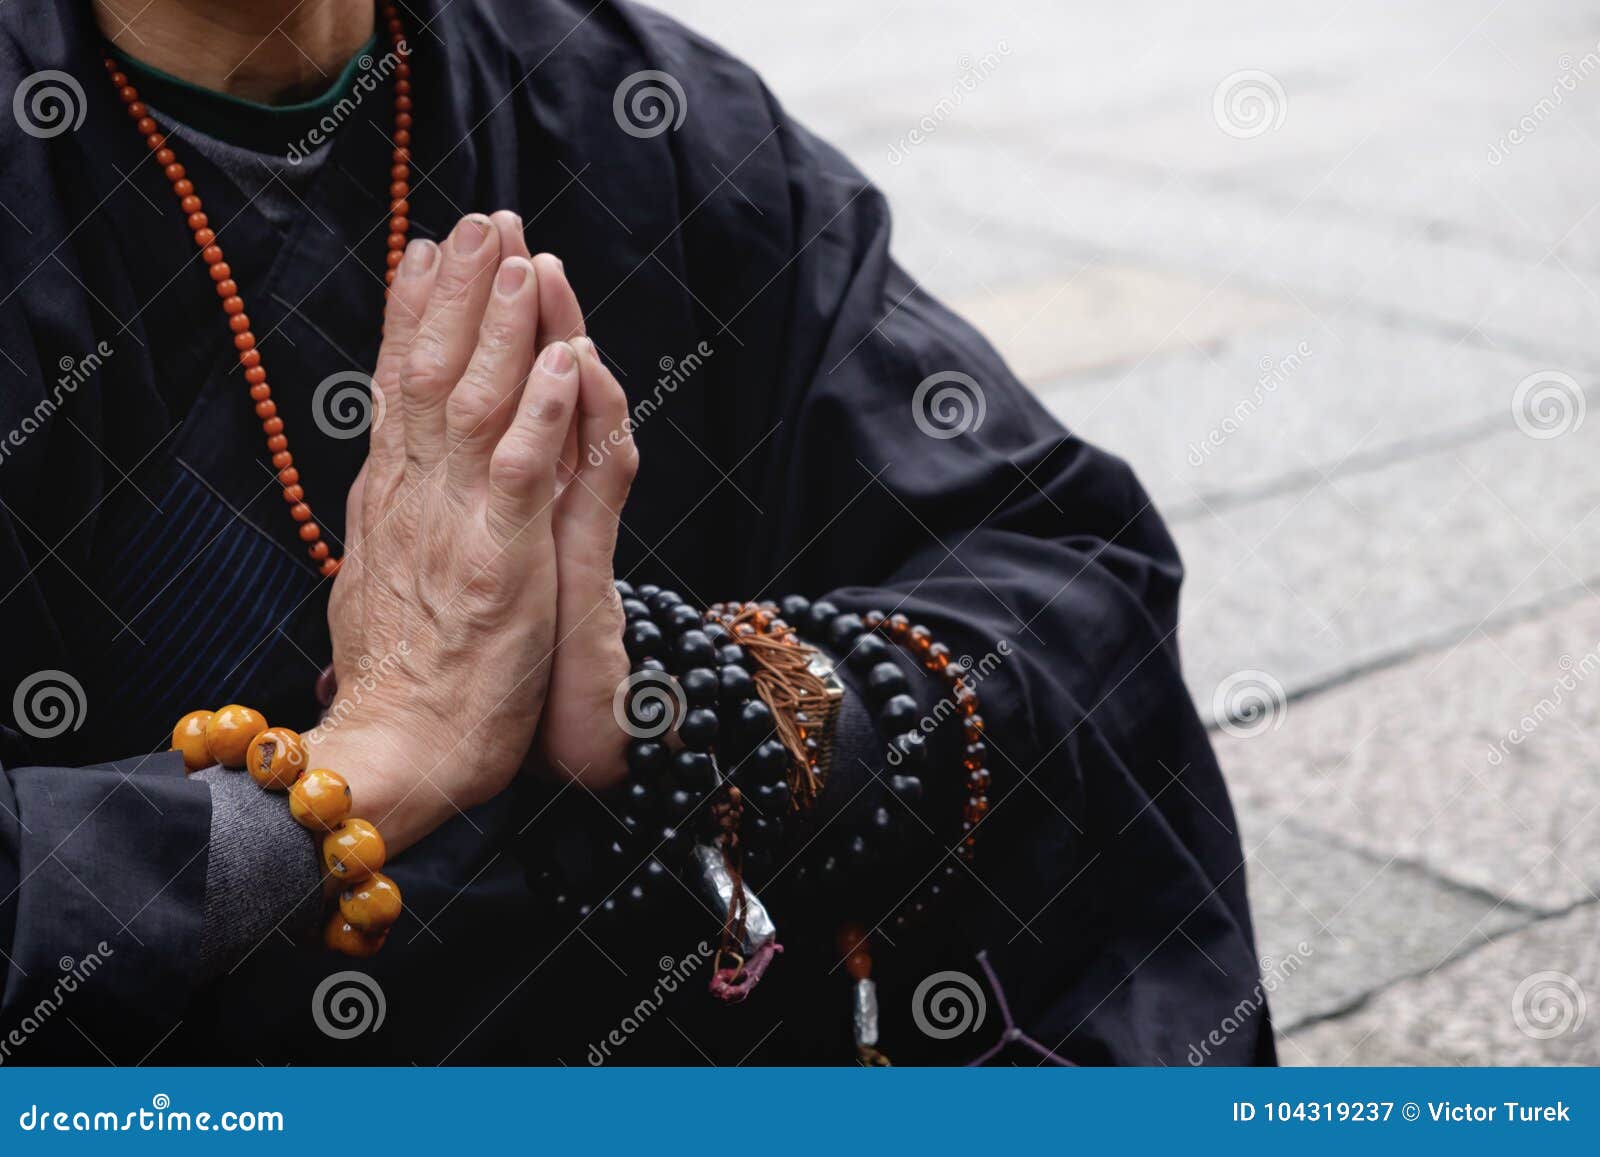 buddhist monk praying